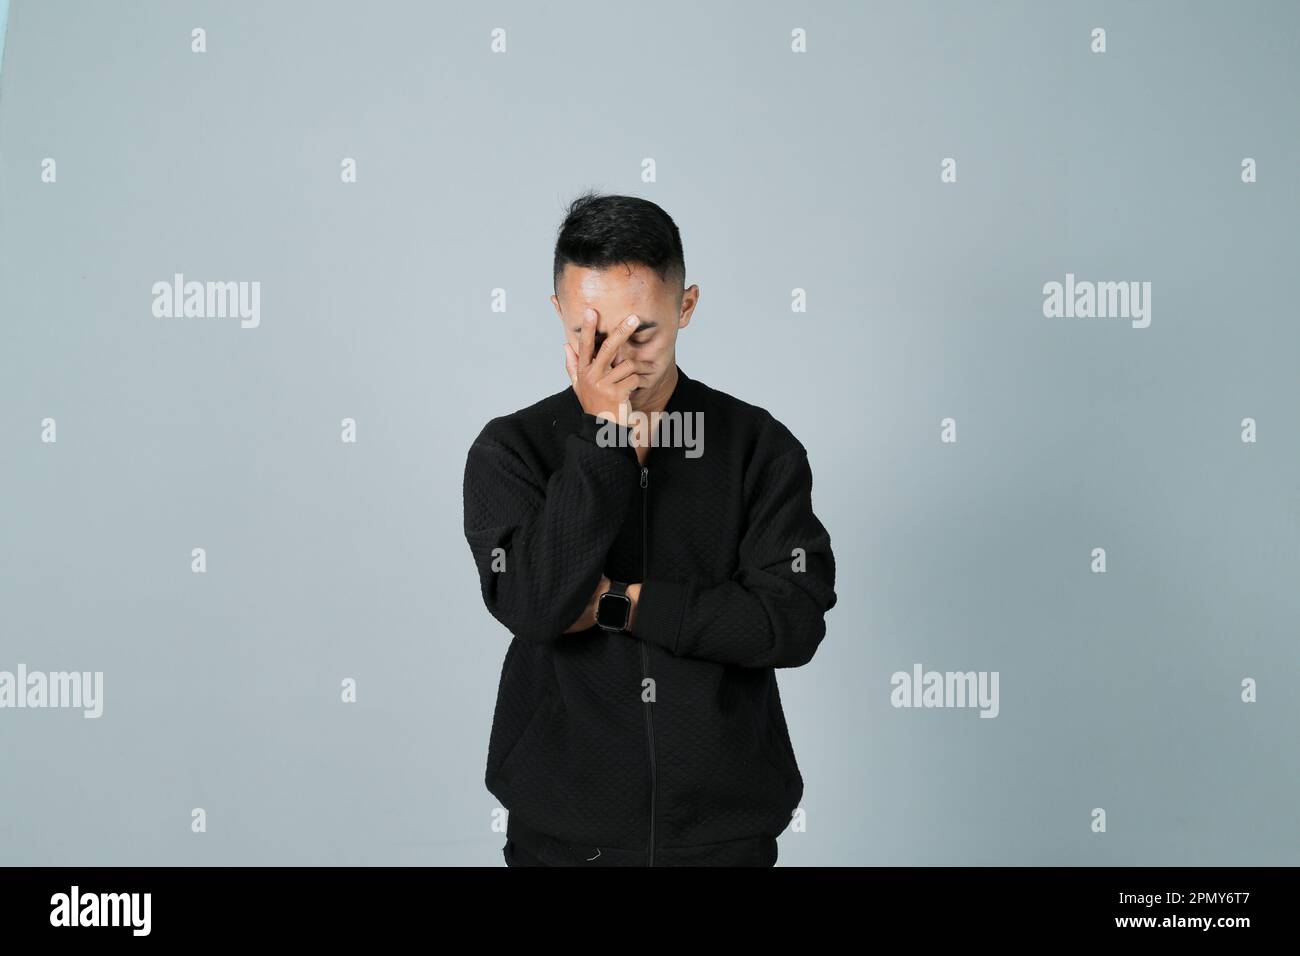 Ein junger Mann, der ein schwarzes Hemd trägt, beklagt seine Angst, isoliert auf grauem Hintergrund Stockfoto